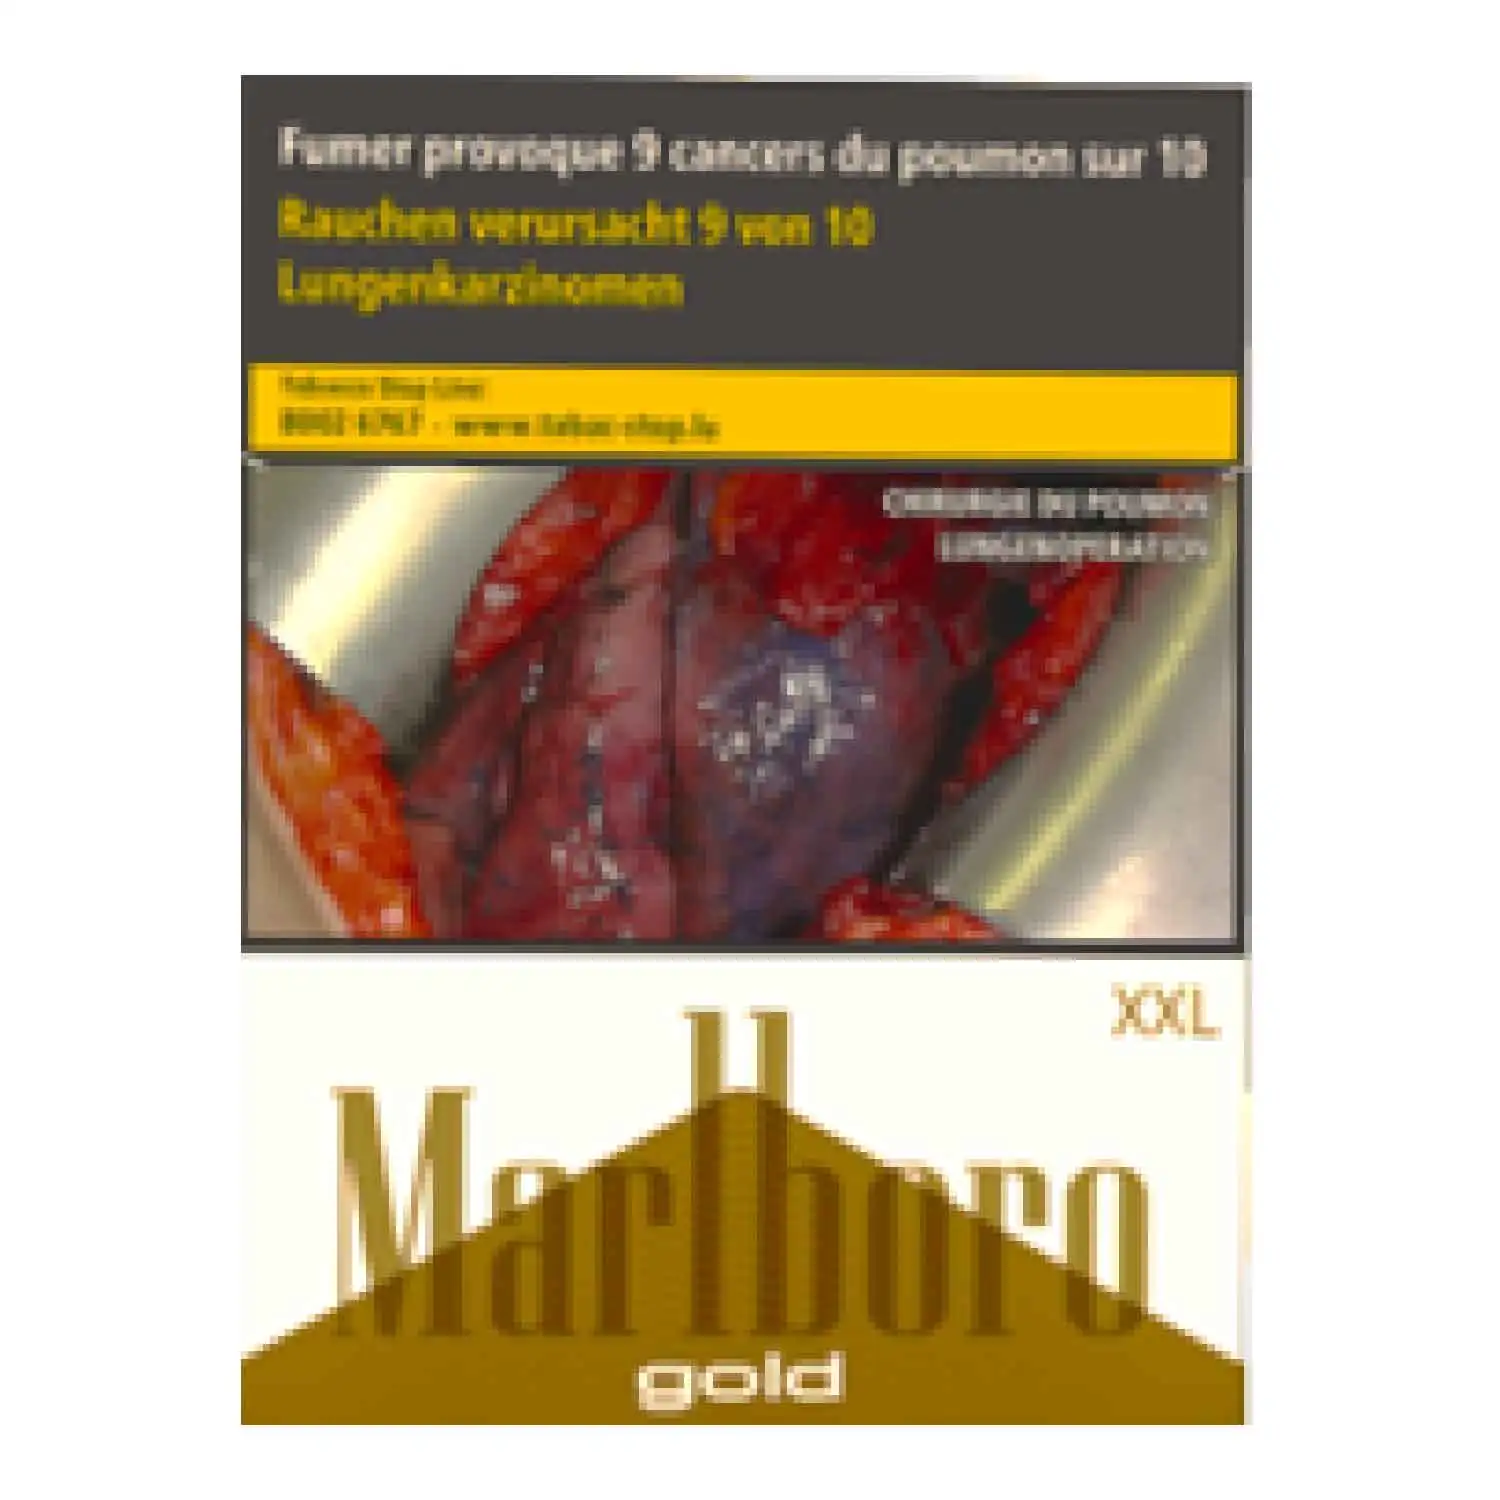 Marlboro gold 40 - Buy at Real Tobacco